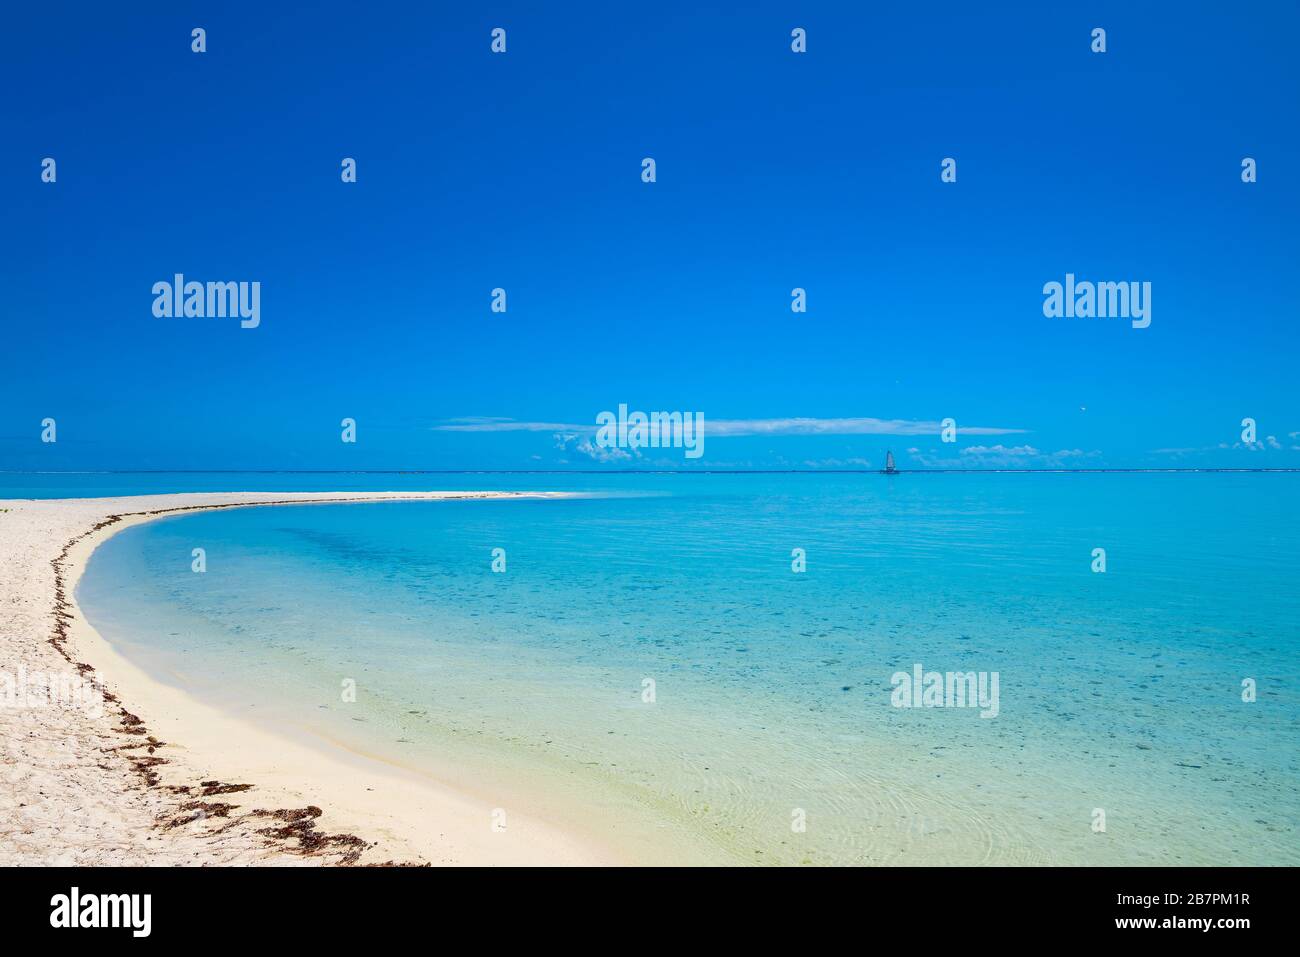 Bora Bora beach with turquoise water, Tahiti, French Polynesia Stock Photo